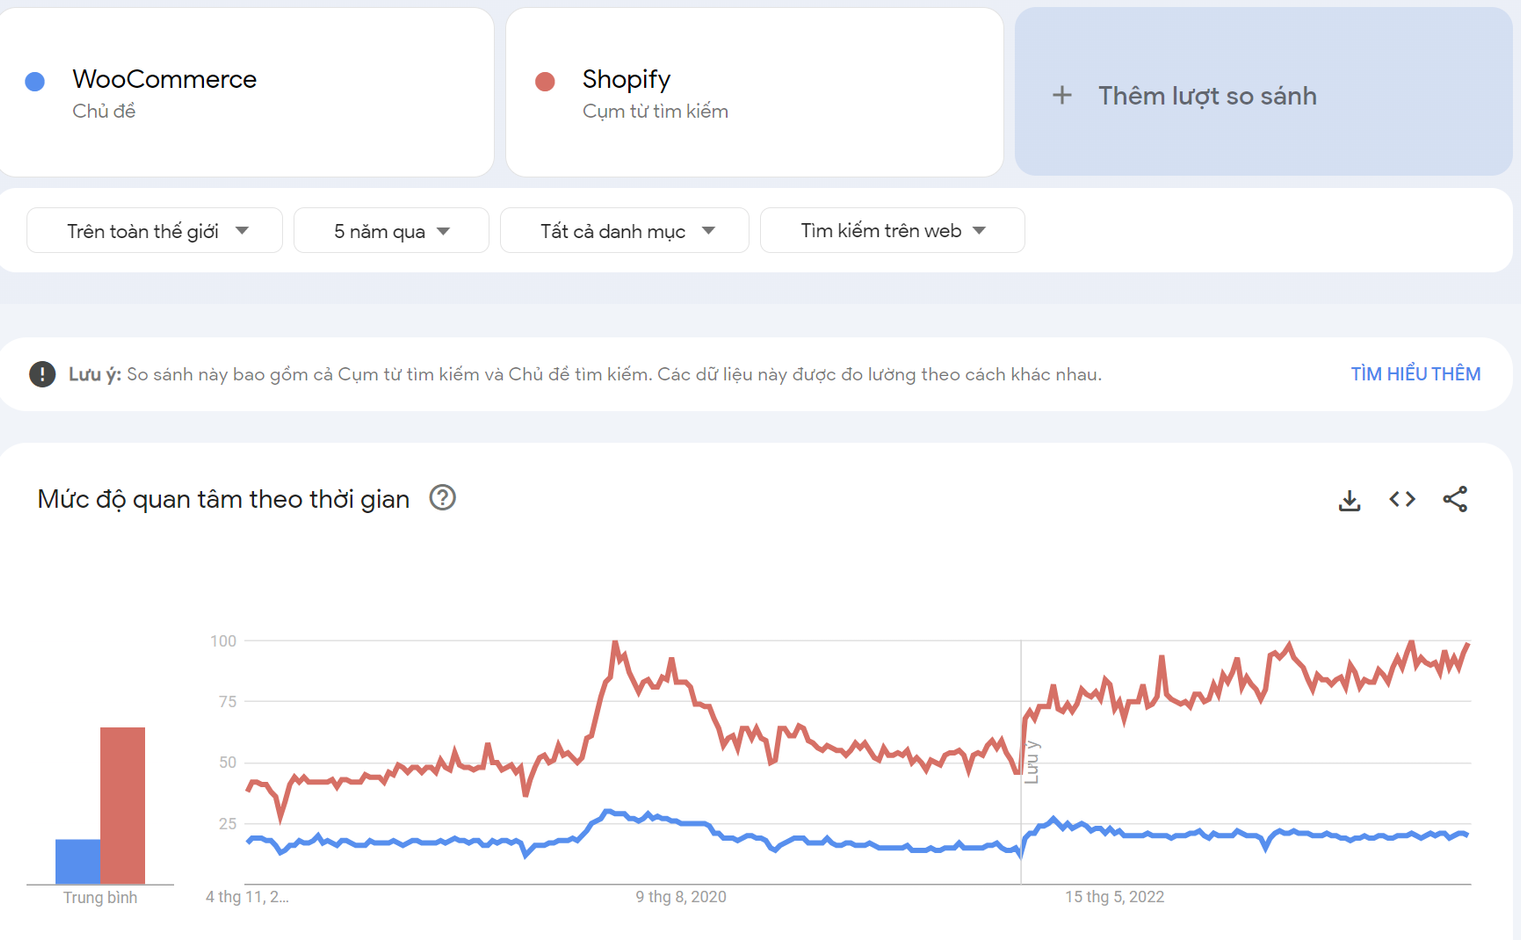 Mức độ phổ biến của Shopify và WooCommerce